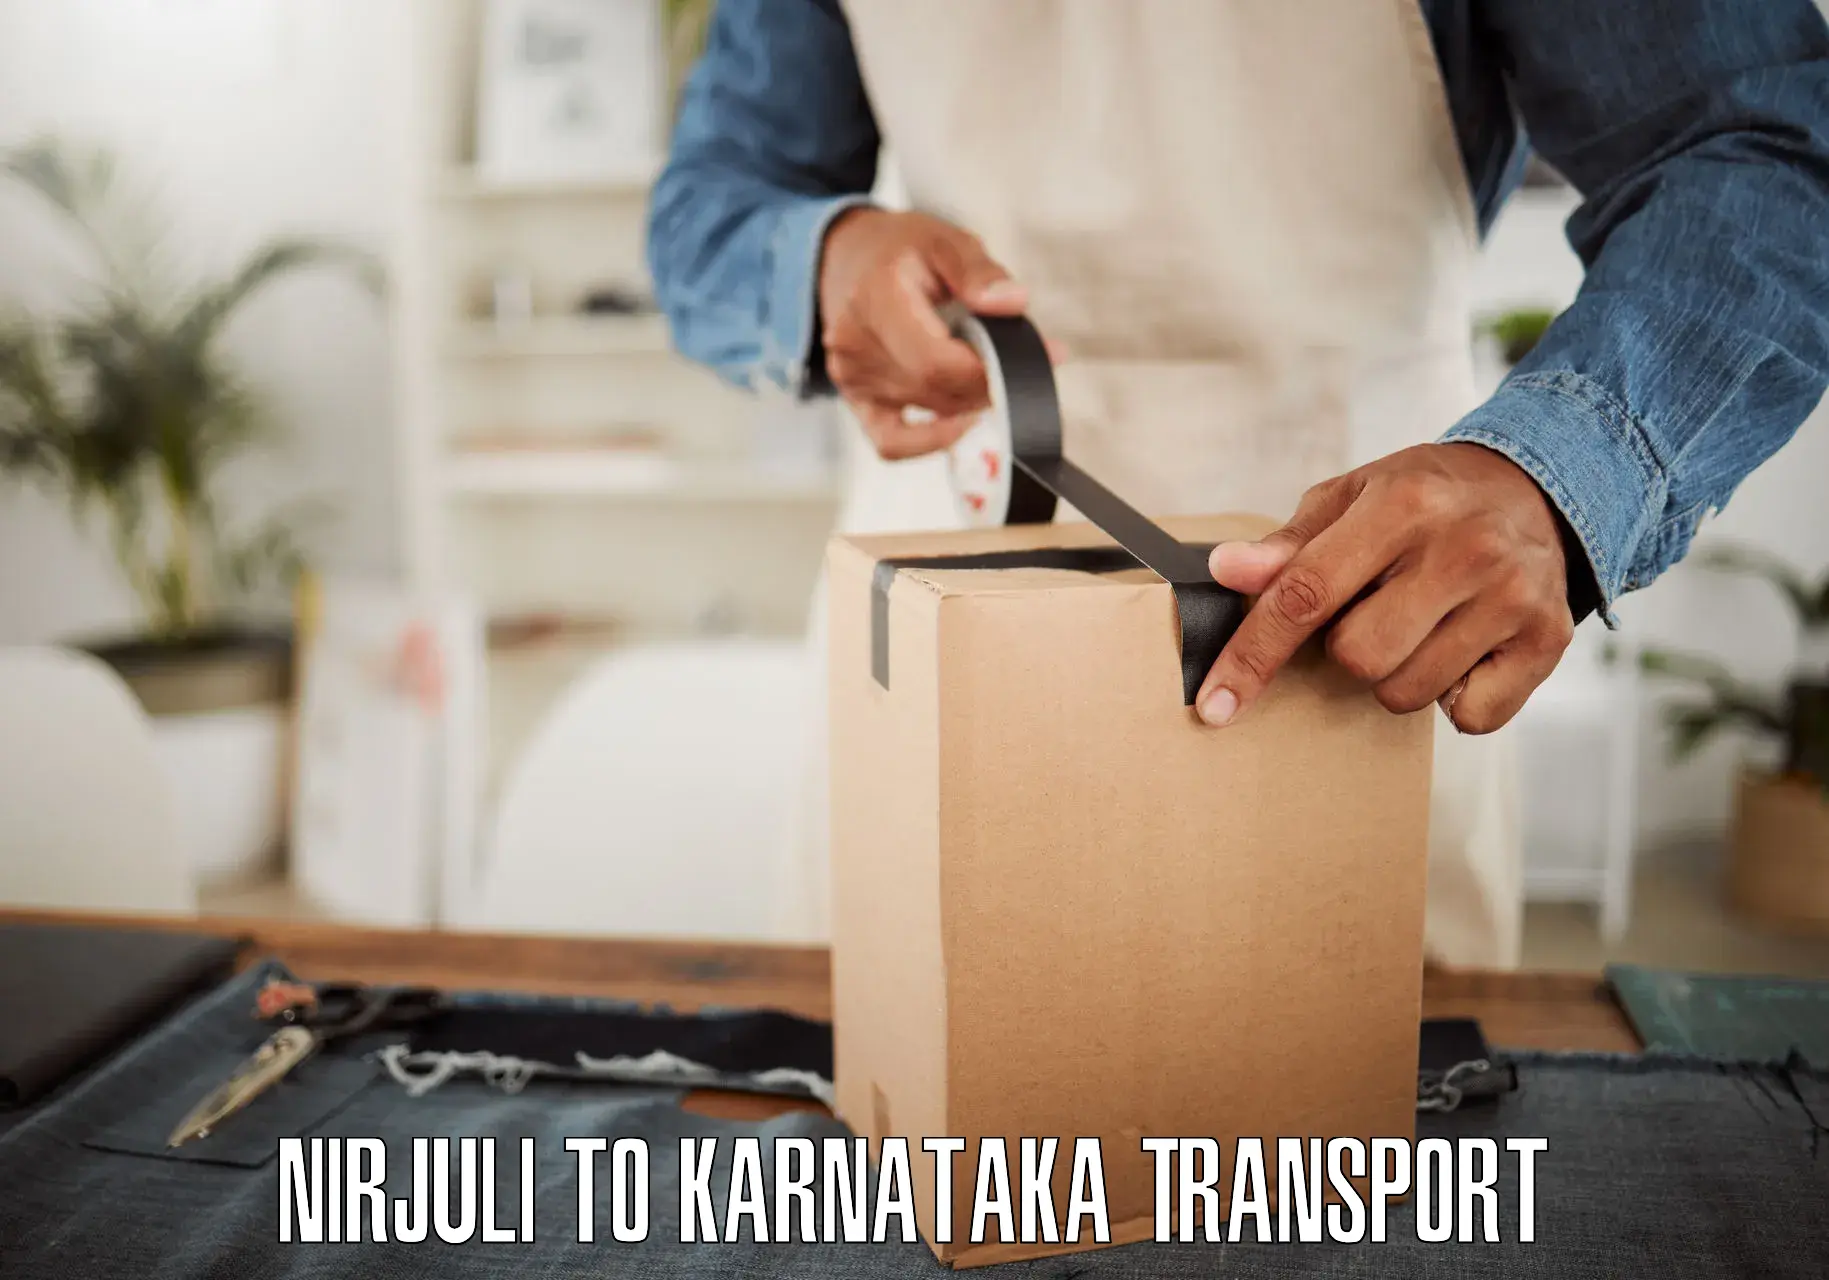 Daily transport service Nirjuli to Kanjarakatte